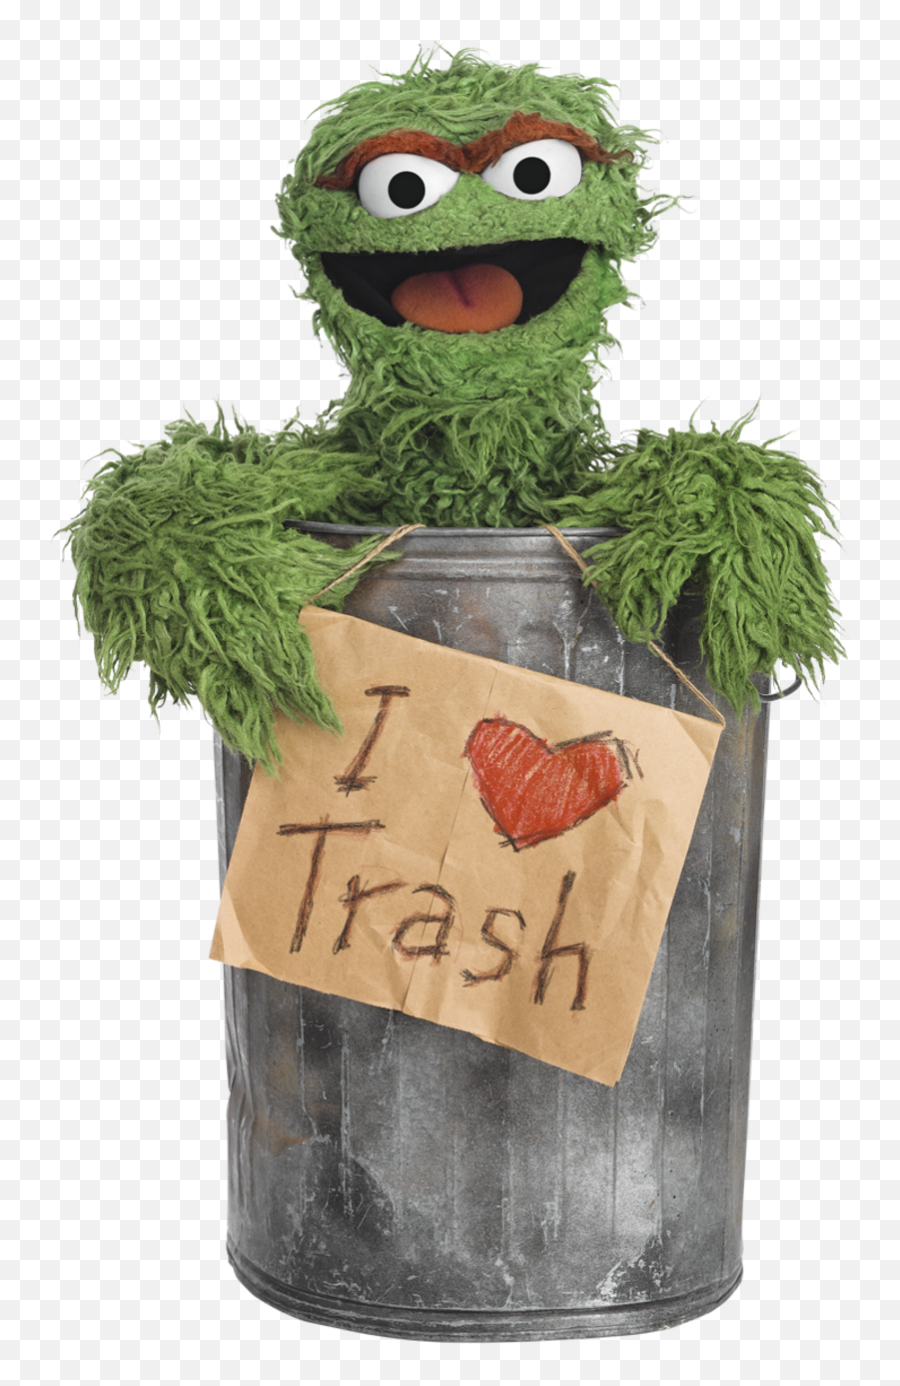 Oscar The Grouch I Love Trash Png Image - Oscar The Grouch I Love Trash,Oscar The Grouch Png